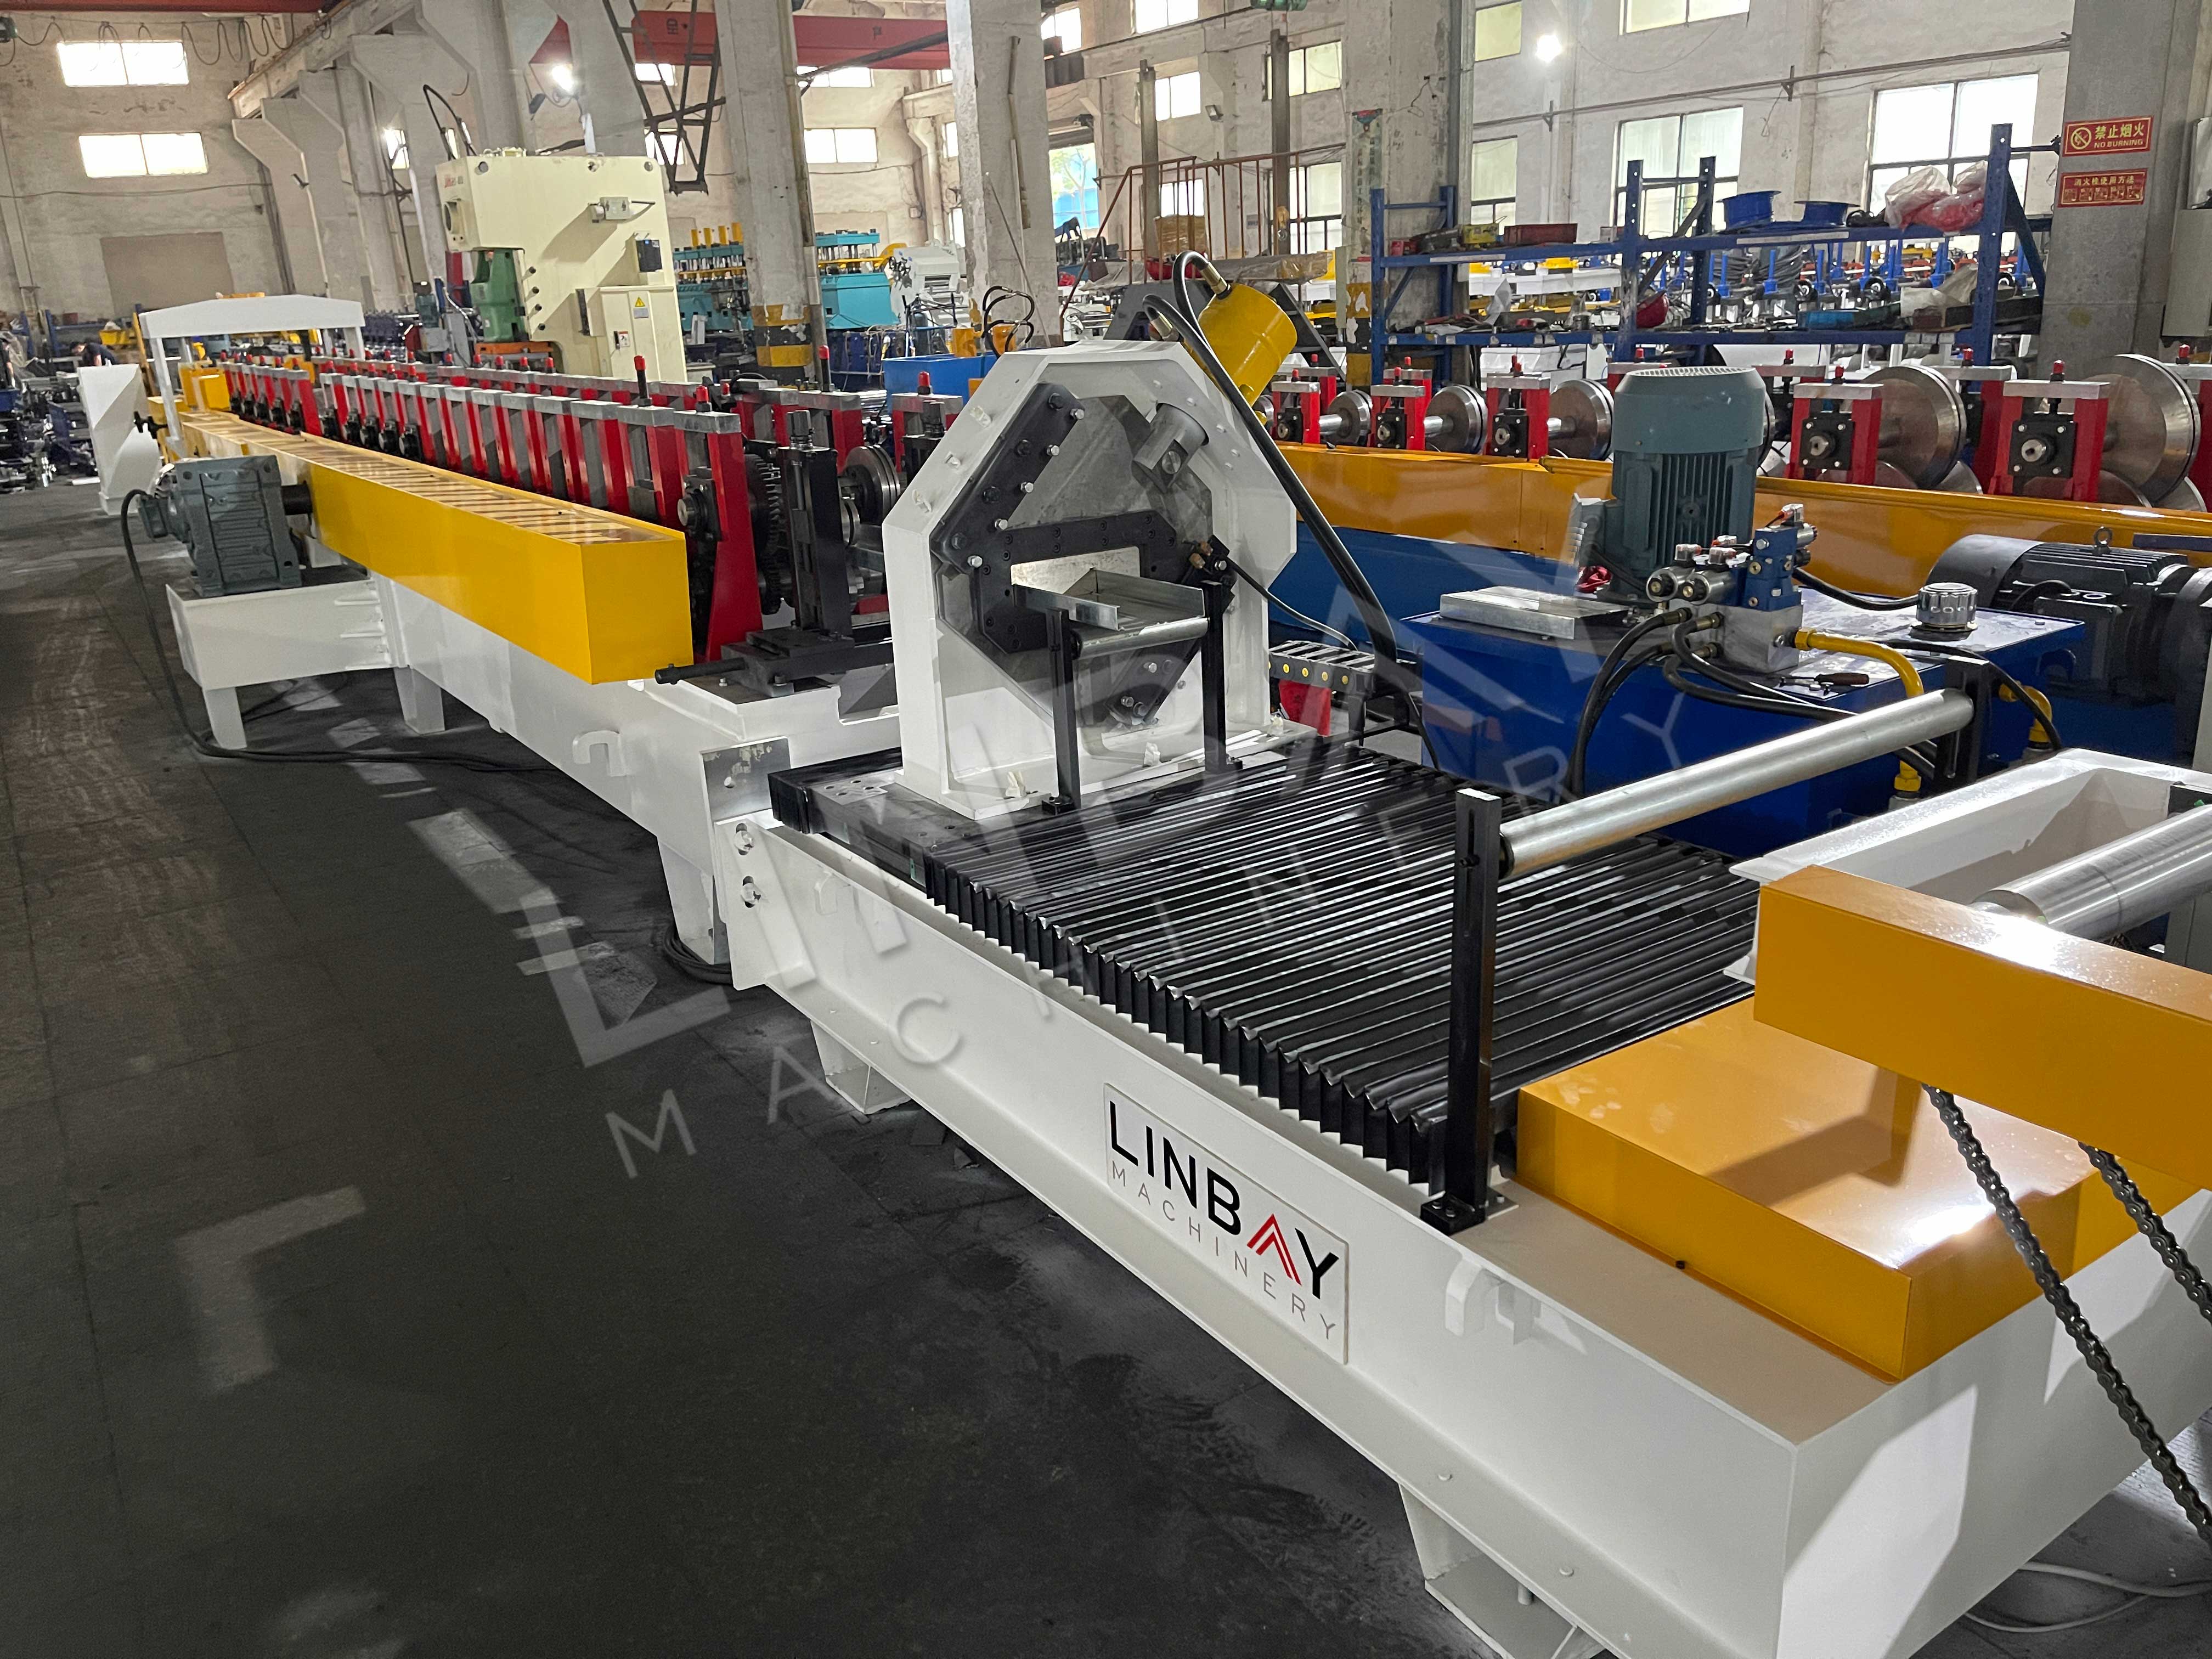 I-LINBAY-Exporta la Máquina Perfiladora de Racks Industriales eVietnam